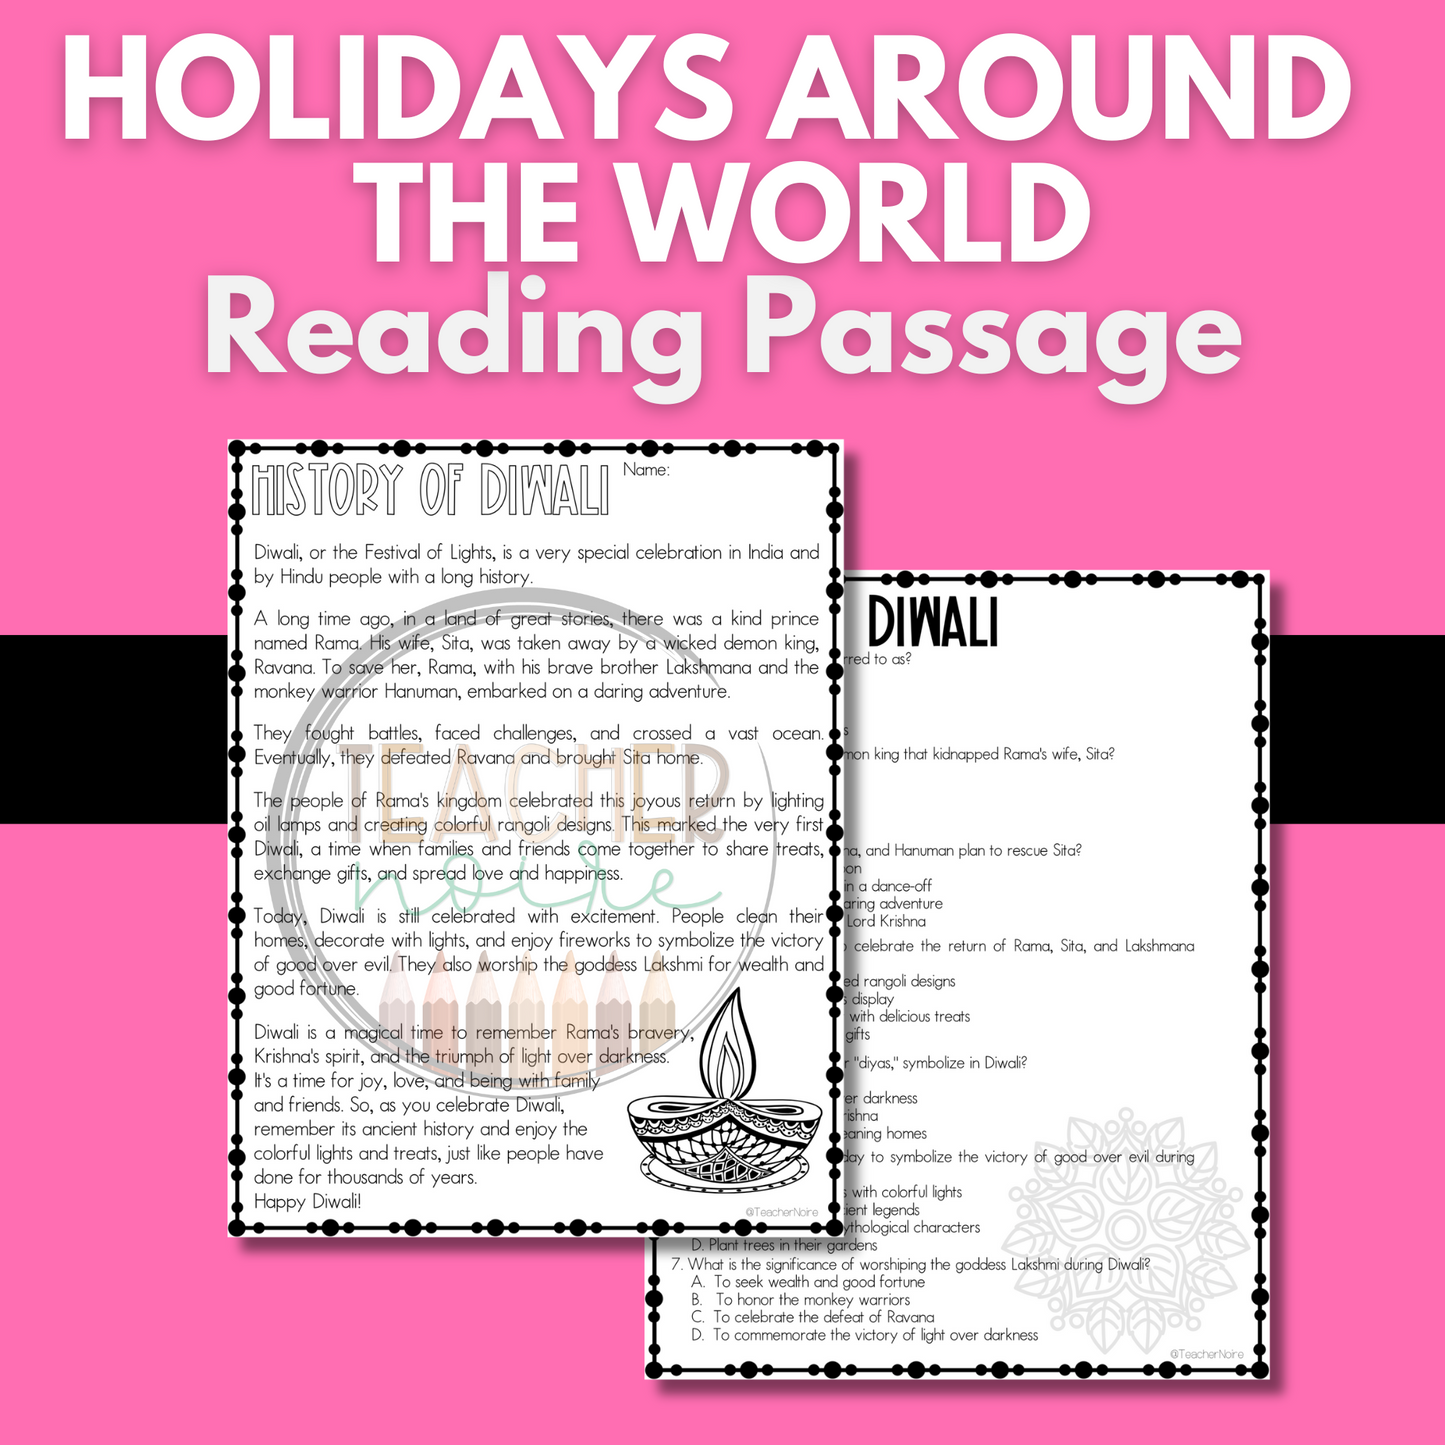 Diwali Coloring Page + Diwali Reading Passage